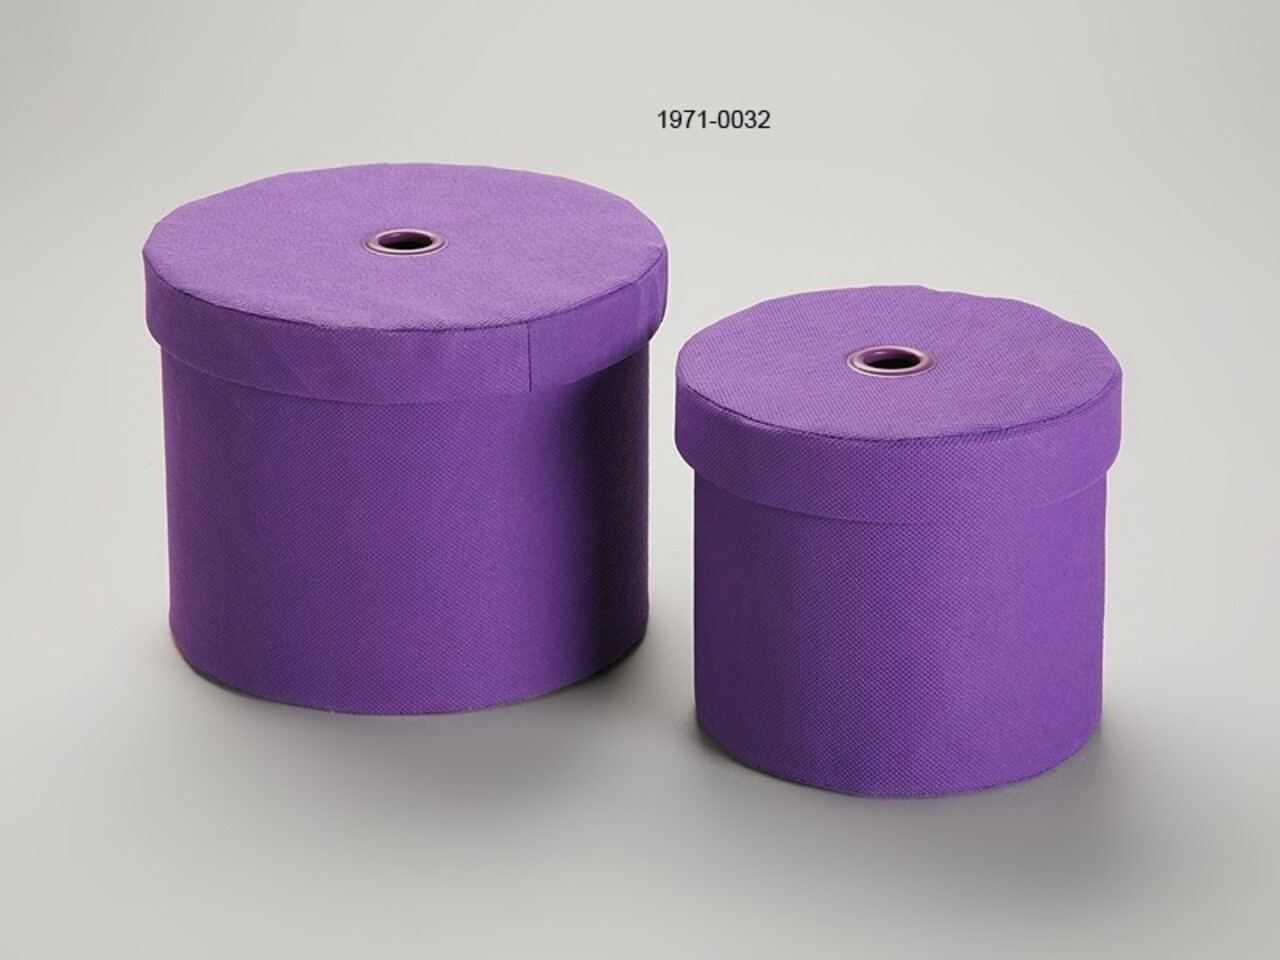 Violetas 2 db Tárolódoboz, Versa, 21x21x17 cm, pamut